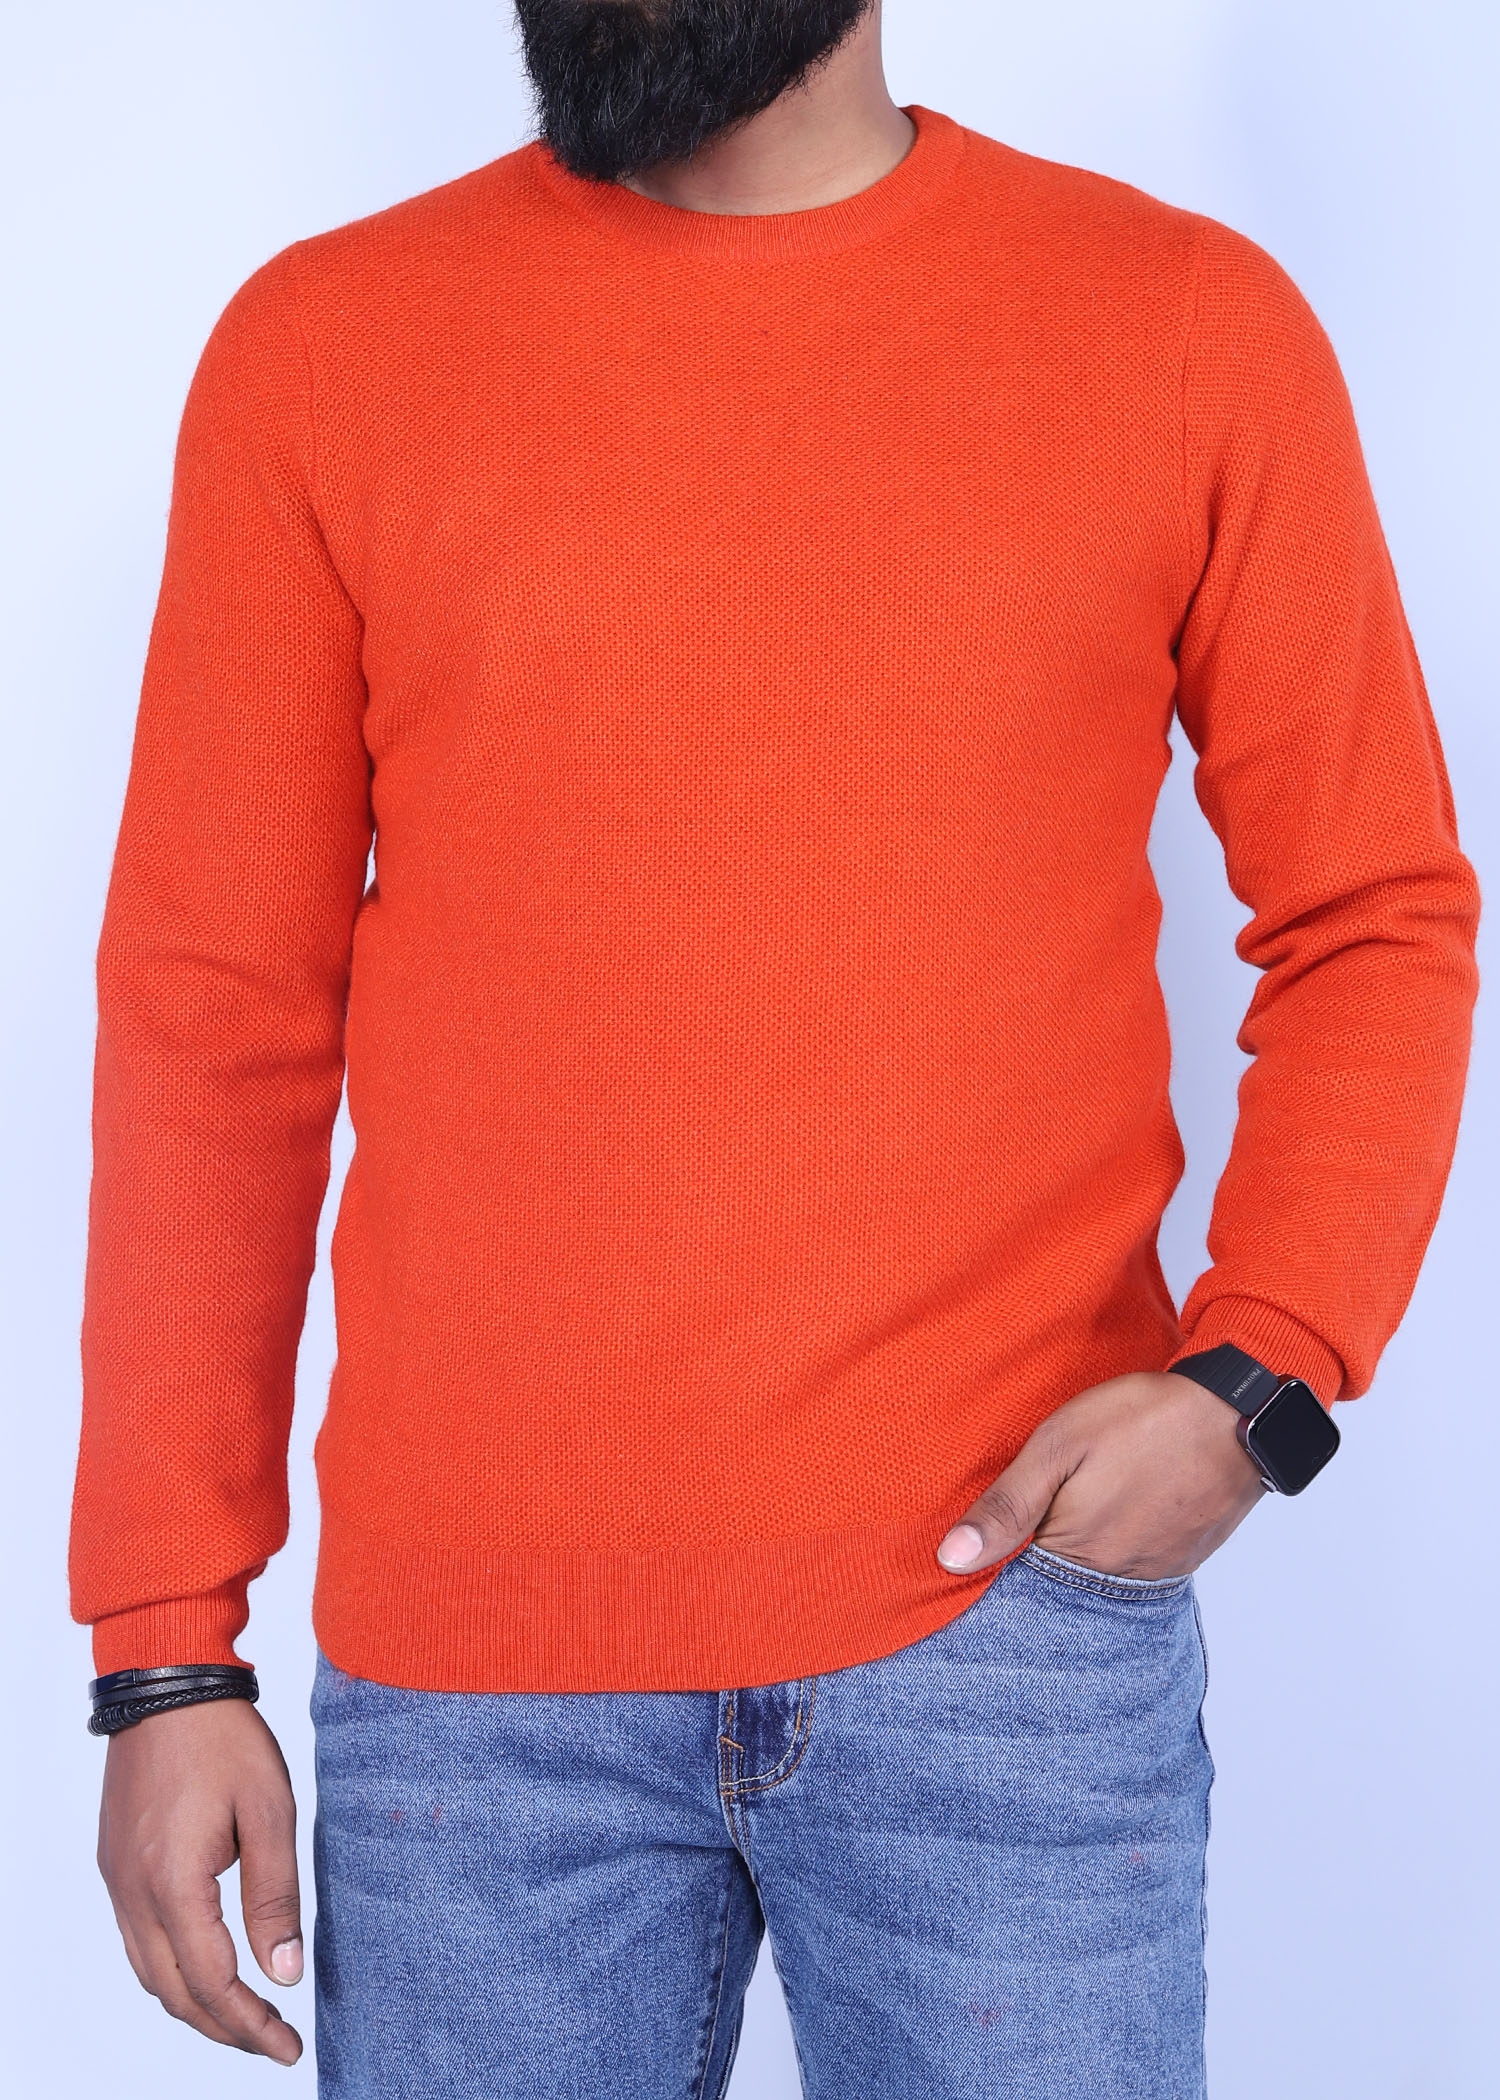 hillstar v sweater orange color half front view